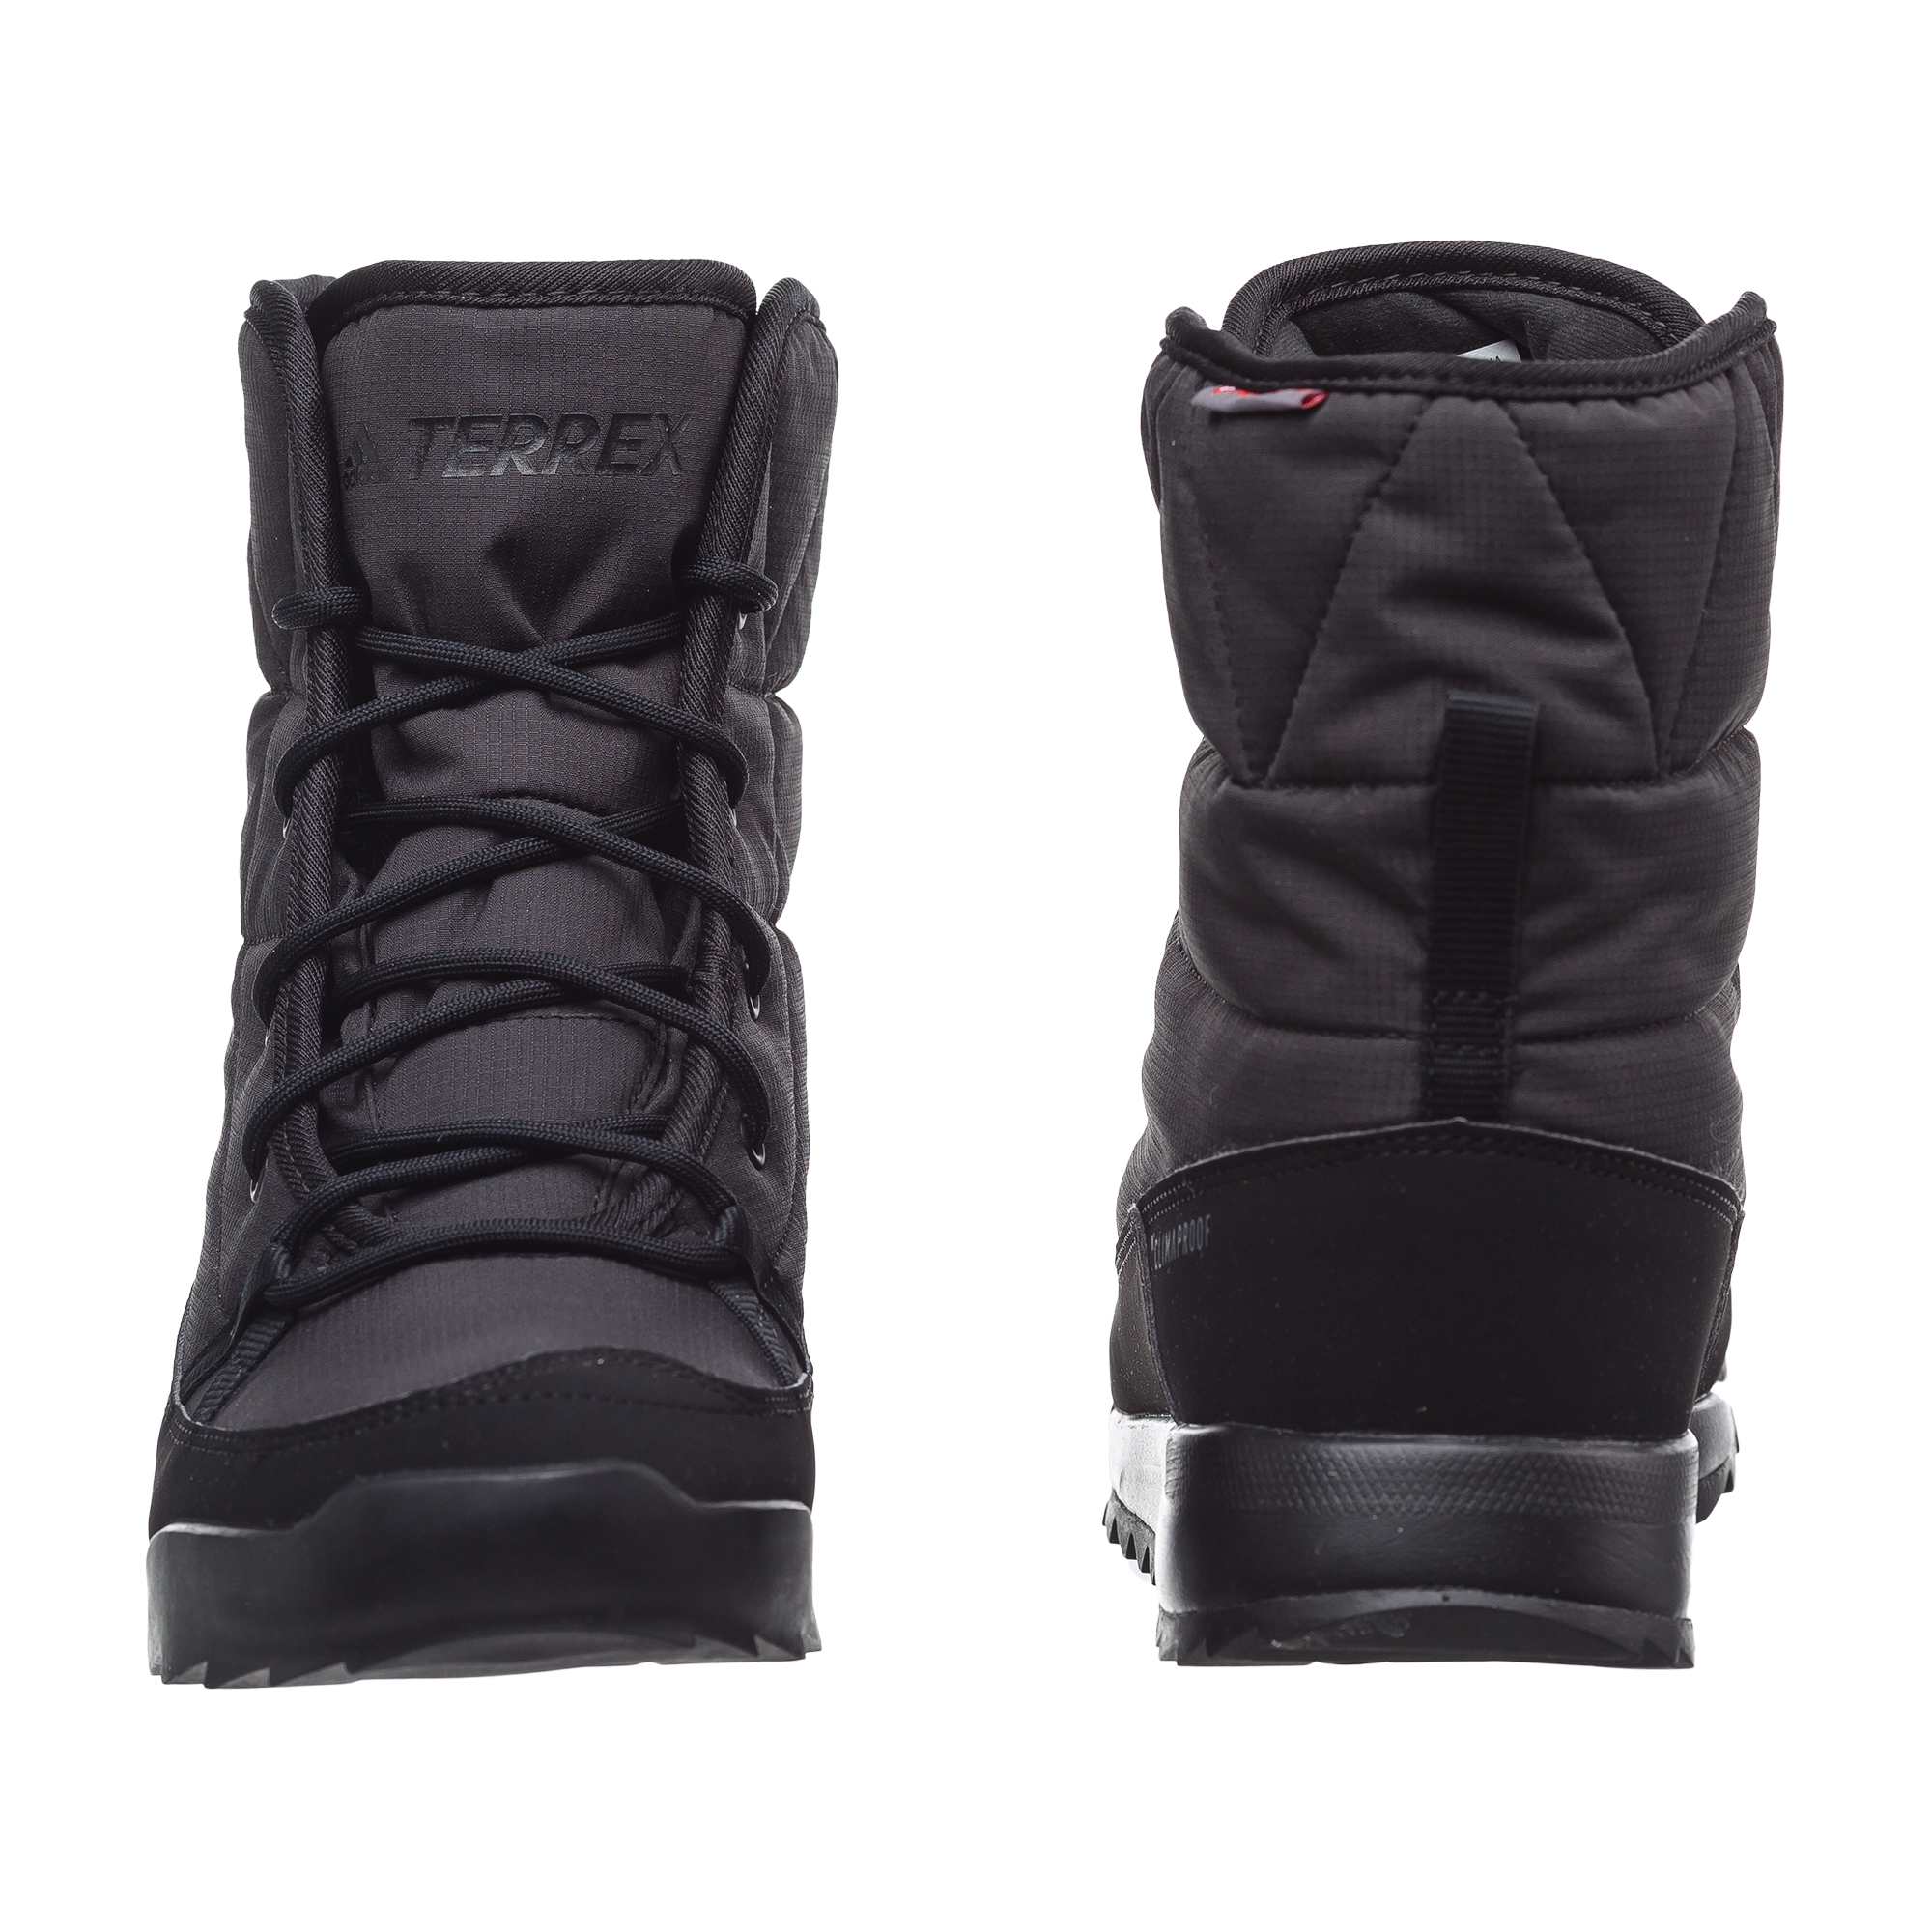 TERREX CHOLEAH PADD Adidas, размер 37, цвет черный ADS80748 - фото 5